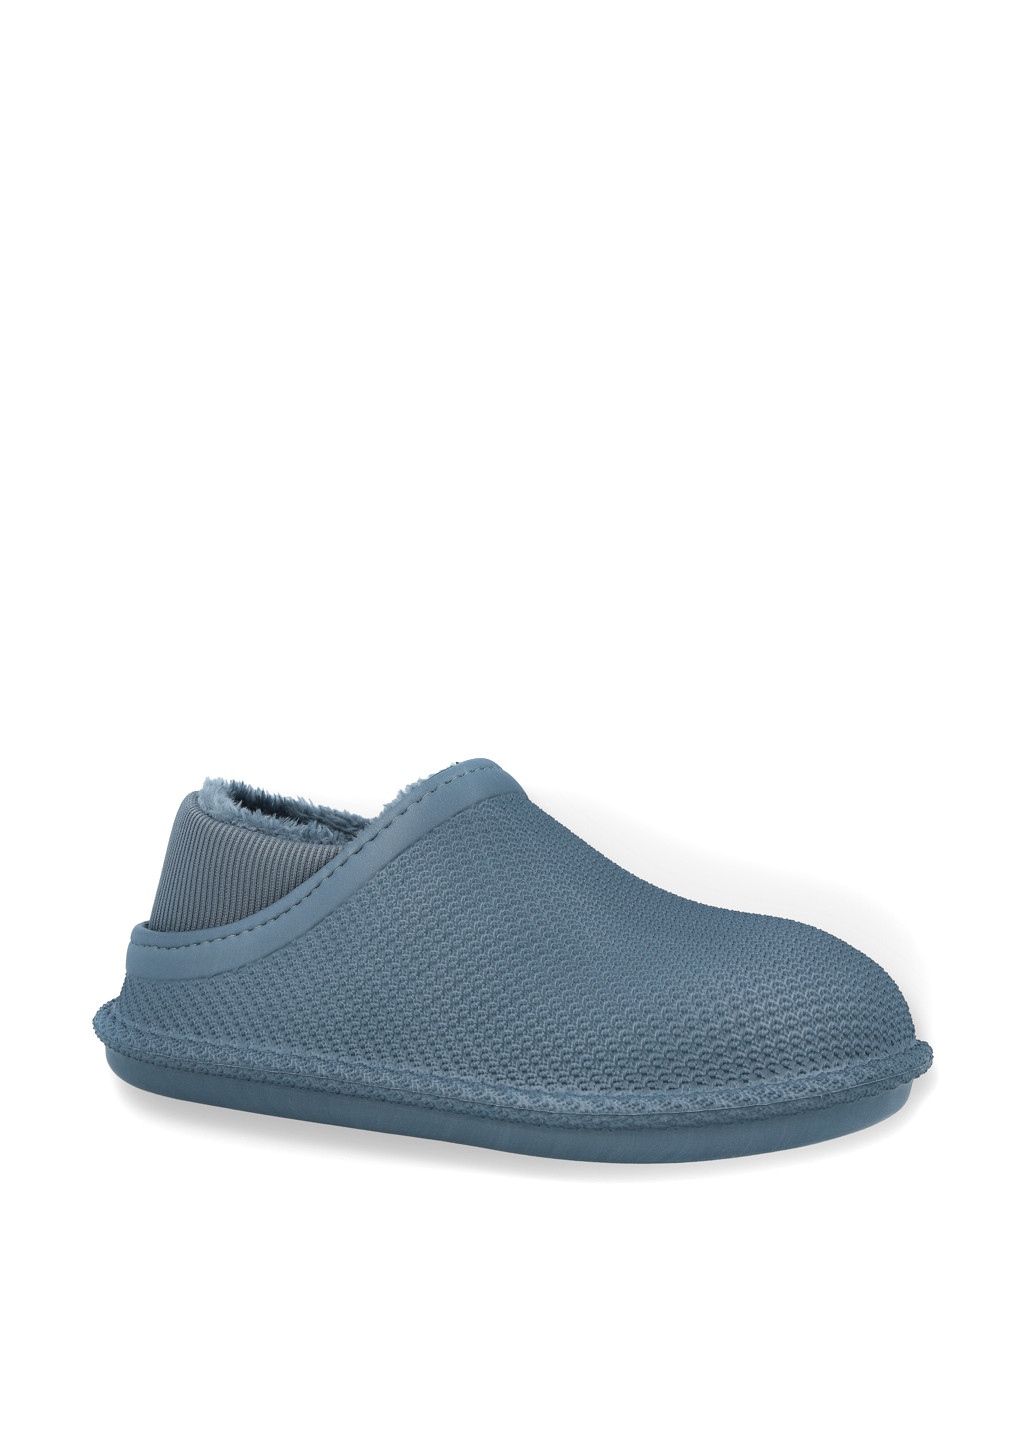 Серо-синие резиновые ботинки GaLosha